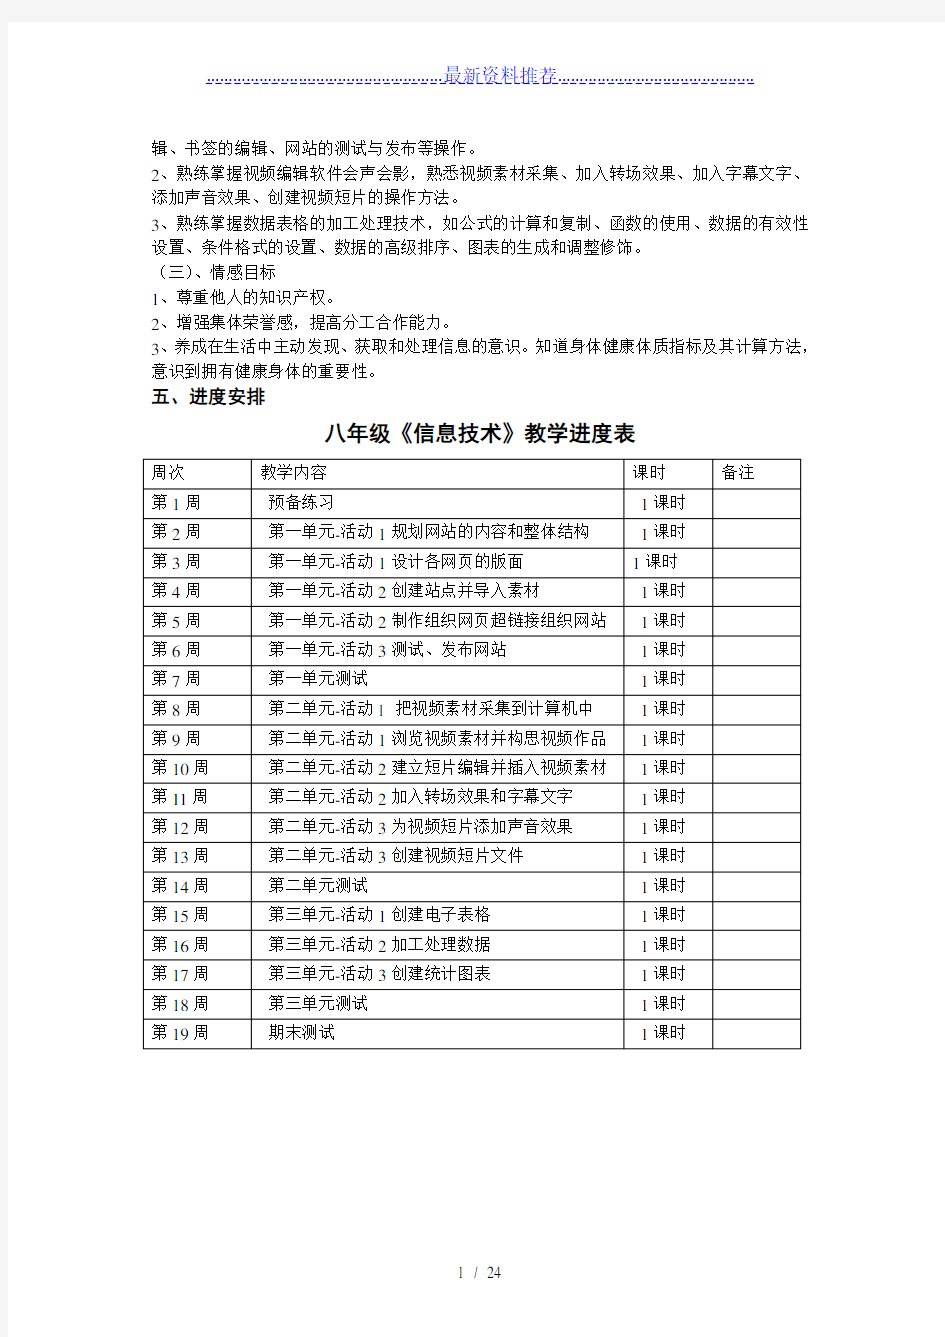 八年级下册信息技术教案-(上海科教版)